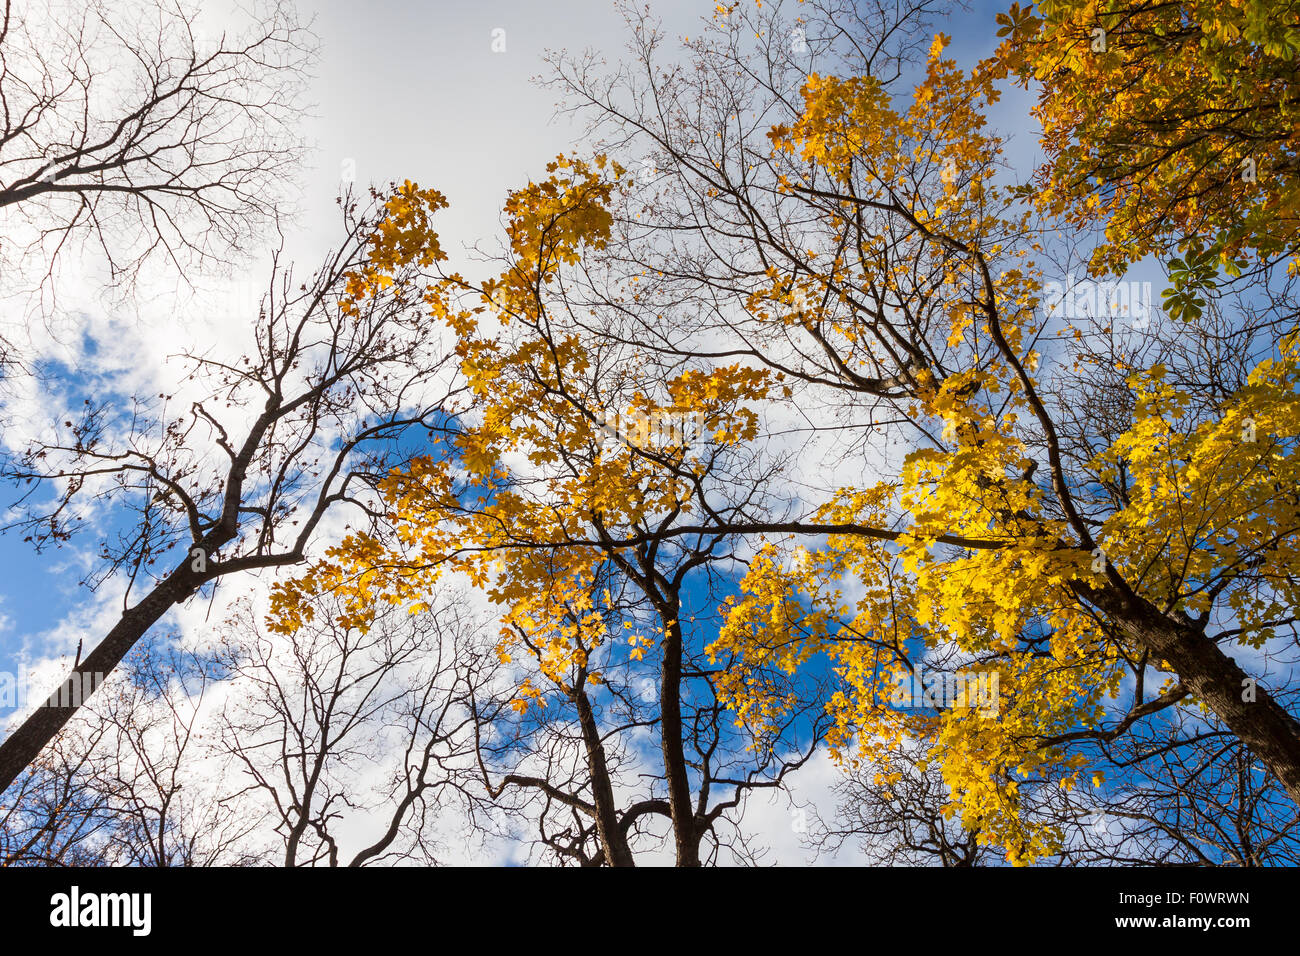 Caen las hojas de los árboles de arce en un cielo azul con nubes blancas Foto de stock